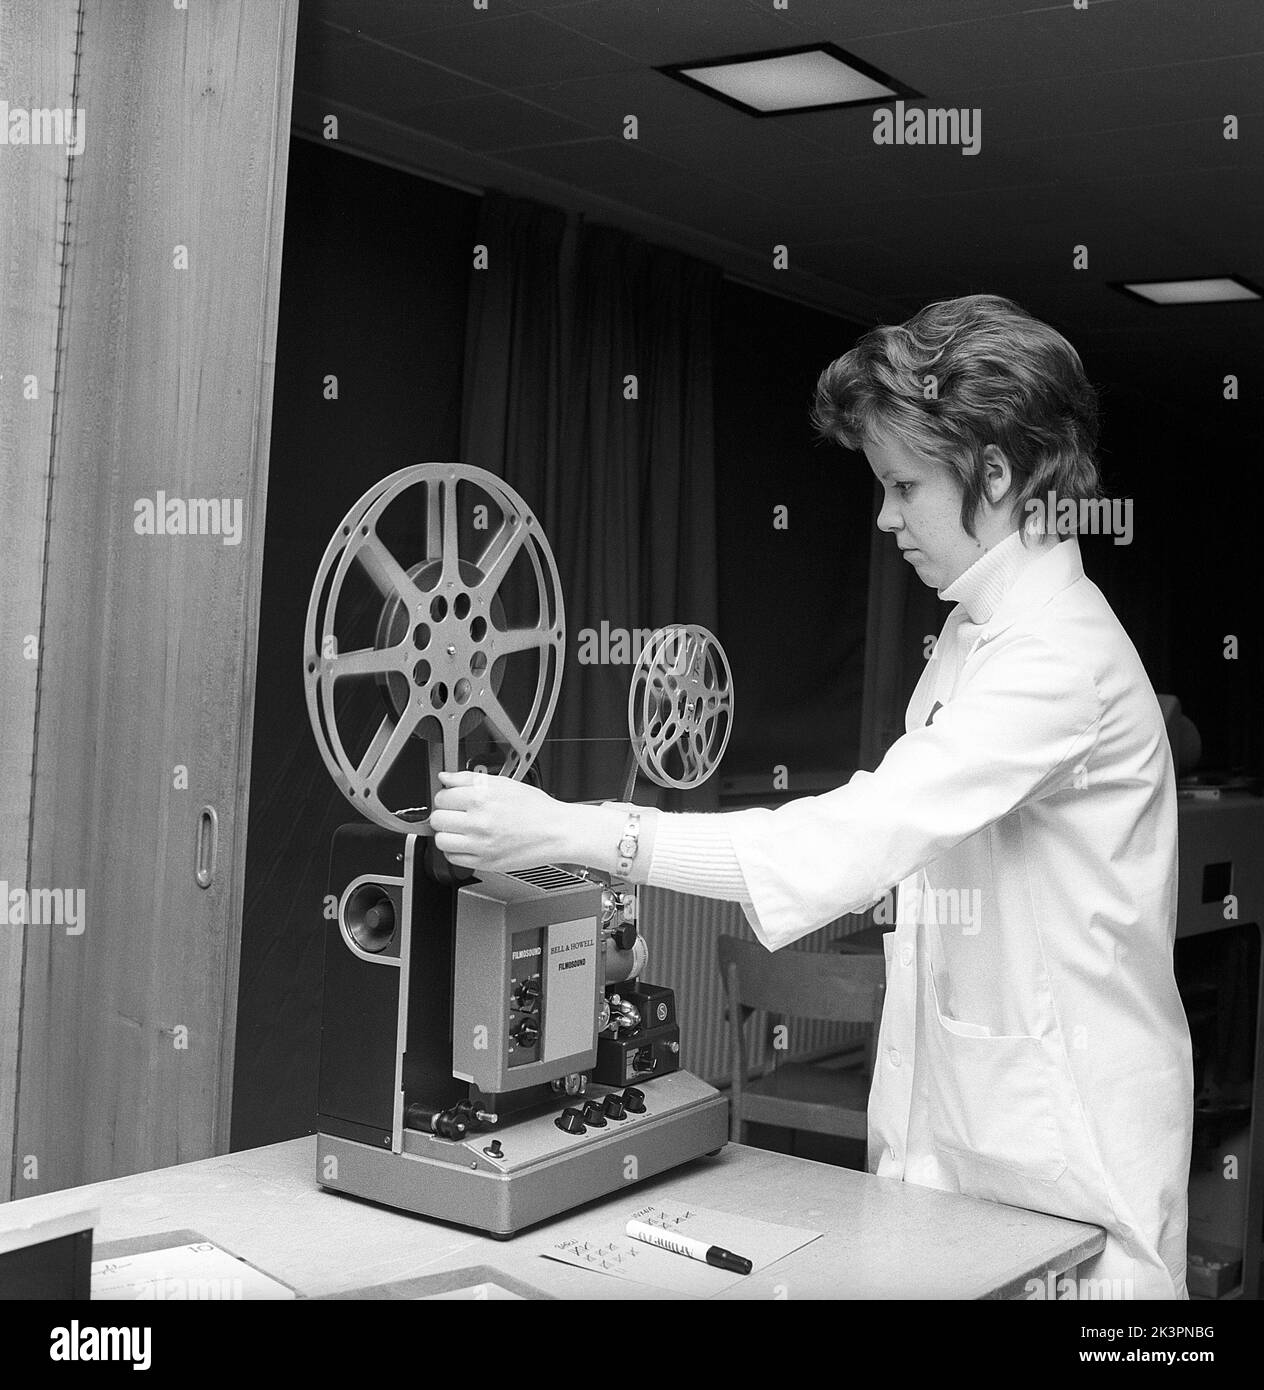 Dans le 1960s. Une jeune femme enseignante avec un projecteur de film, le montage du rouleau de film. Parfois, des courts-métrages ont été projetés dans la salle de classe ou dans une salle de visionnement spéciale, non seulement pour des spectacles éducatifs mais aussi pour le divertissement. Le film avait du son. Une fois que le rouleau de film a été vu, le film a été enroulé sur un rouleau récepteur et a dû être retourné. Suède 1968 réf. CV77 Banque D'Images